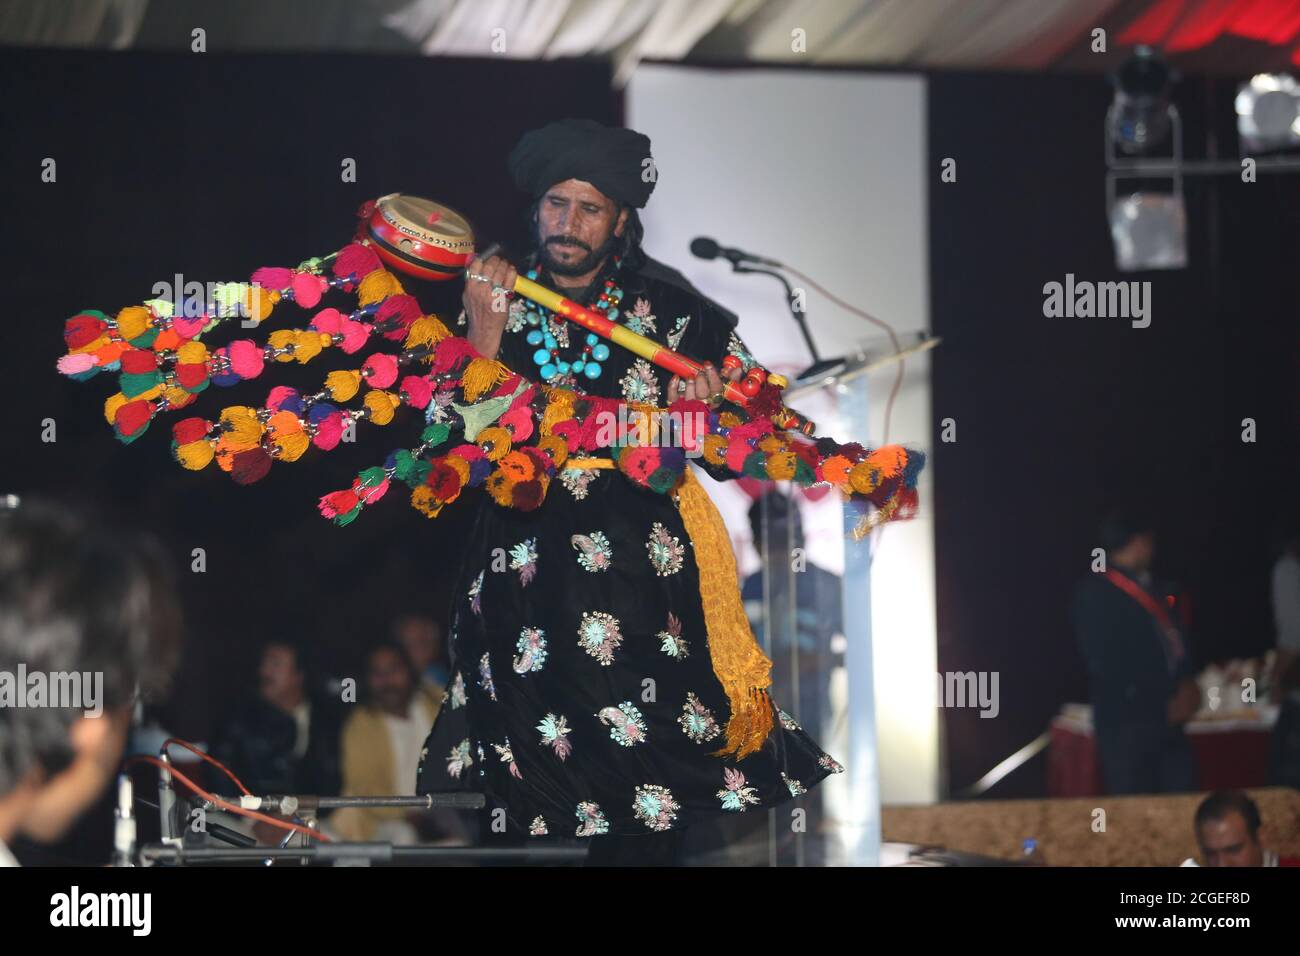 Sufi musician saieen zahoor preforming Stock Photo